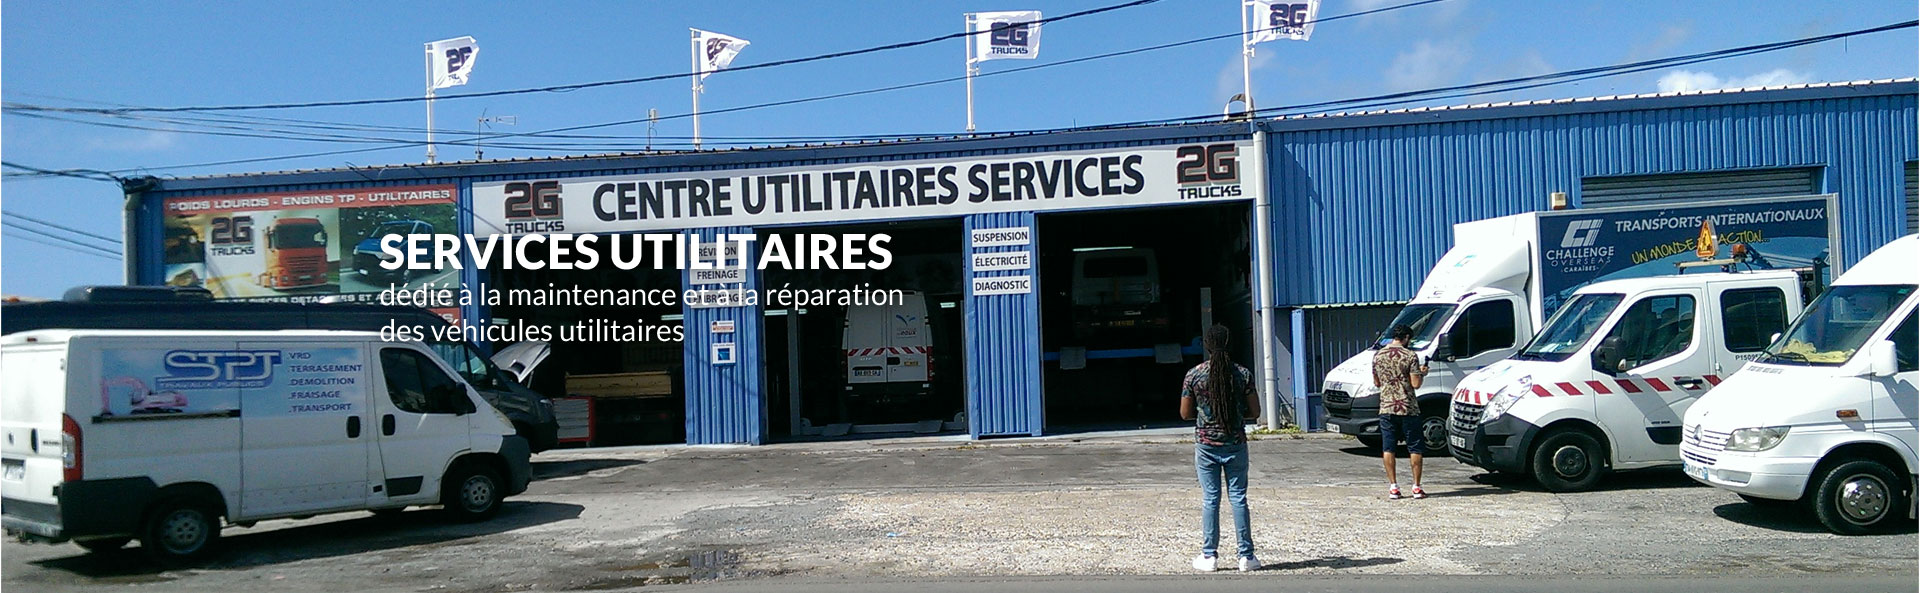 2G Trucks centre de services pour véhicules utilitaires à Jarry - Guadeloupe